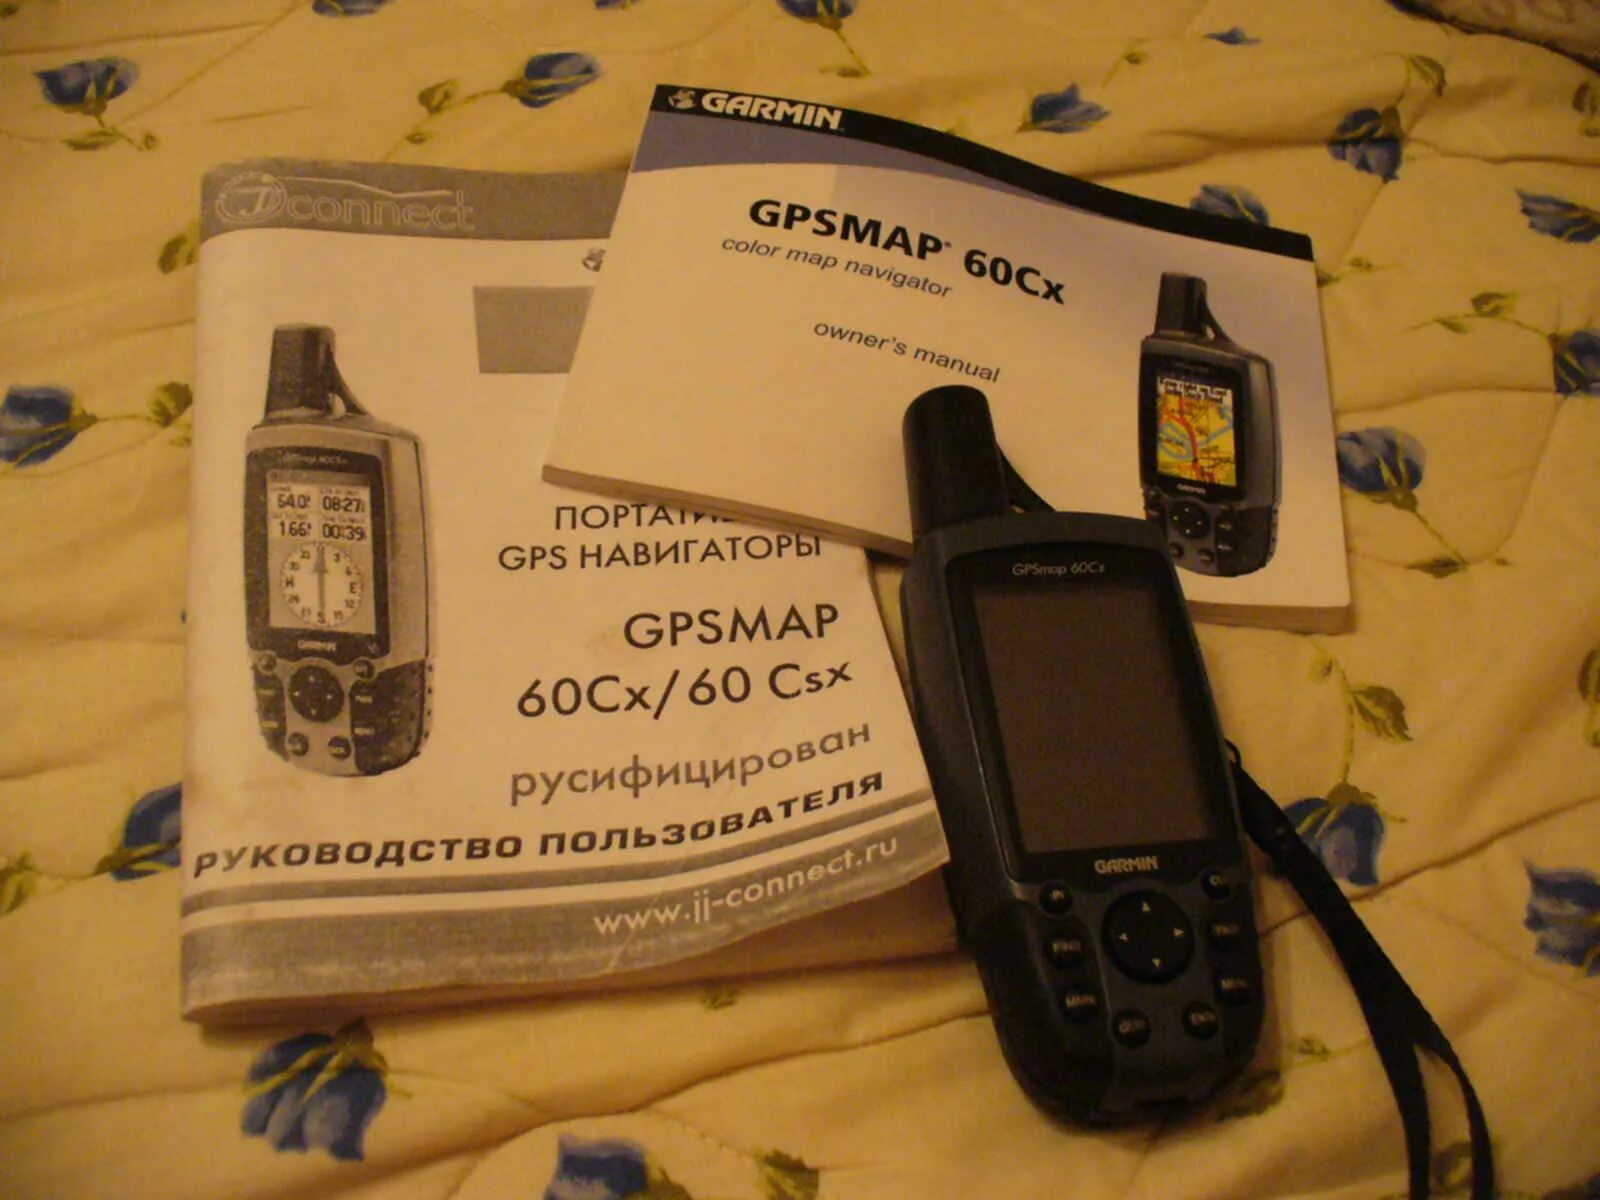 GPSMAP 60cx. Недорогой навигатор для зимней рыбалки. Куплю продам навигатор Гармин для охоты. Купить навигатор для охоты и рыбалки бу на авито в Ульяновске.